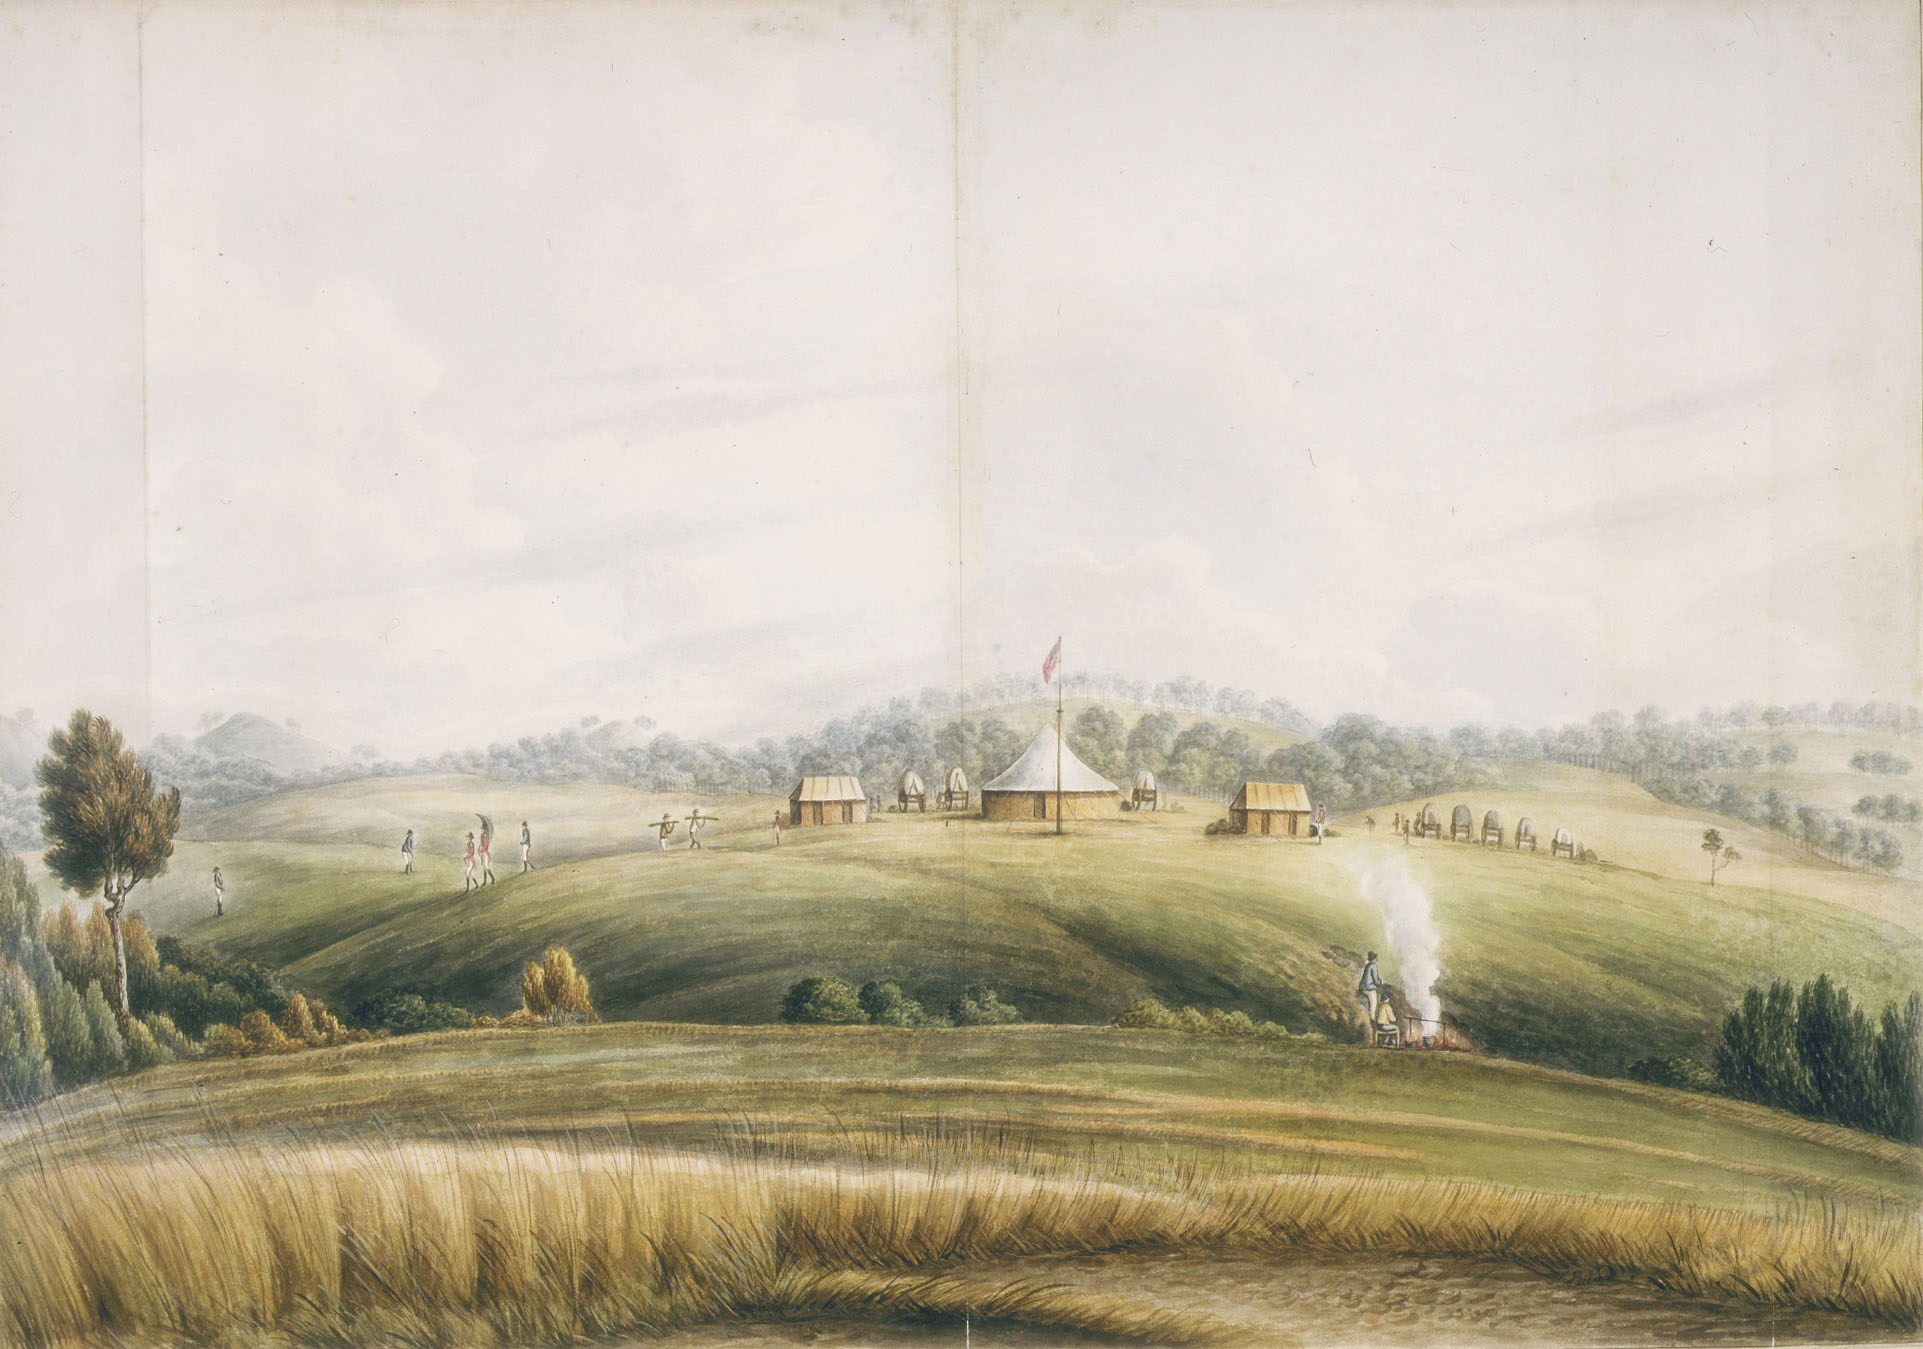 The Plains, Bathurst, by John Lewin, about 1815